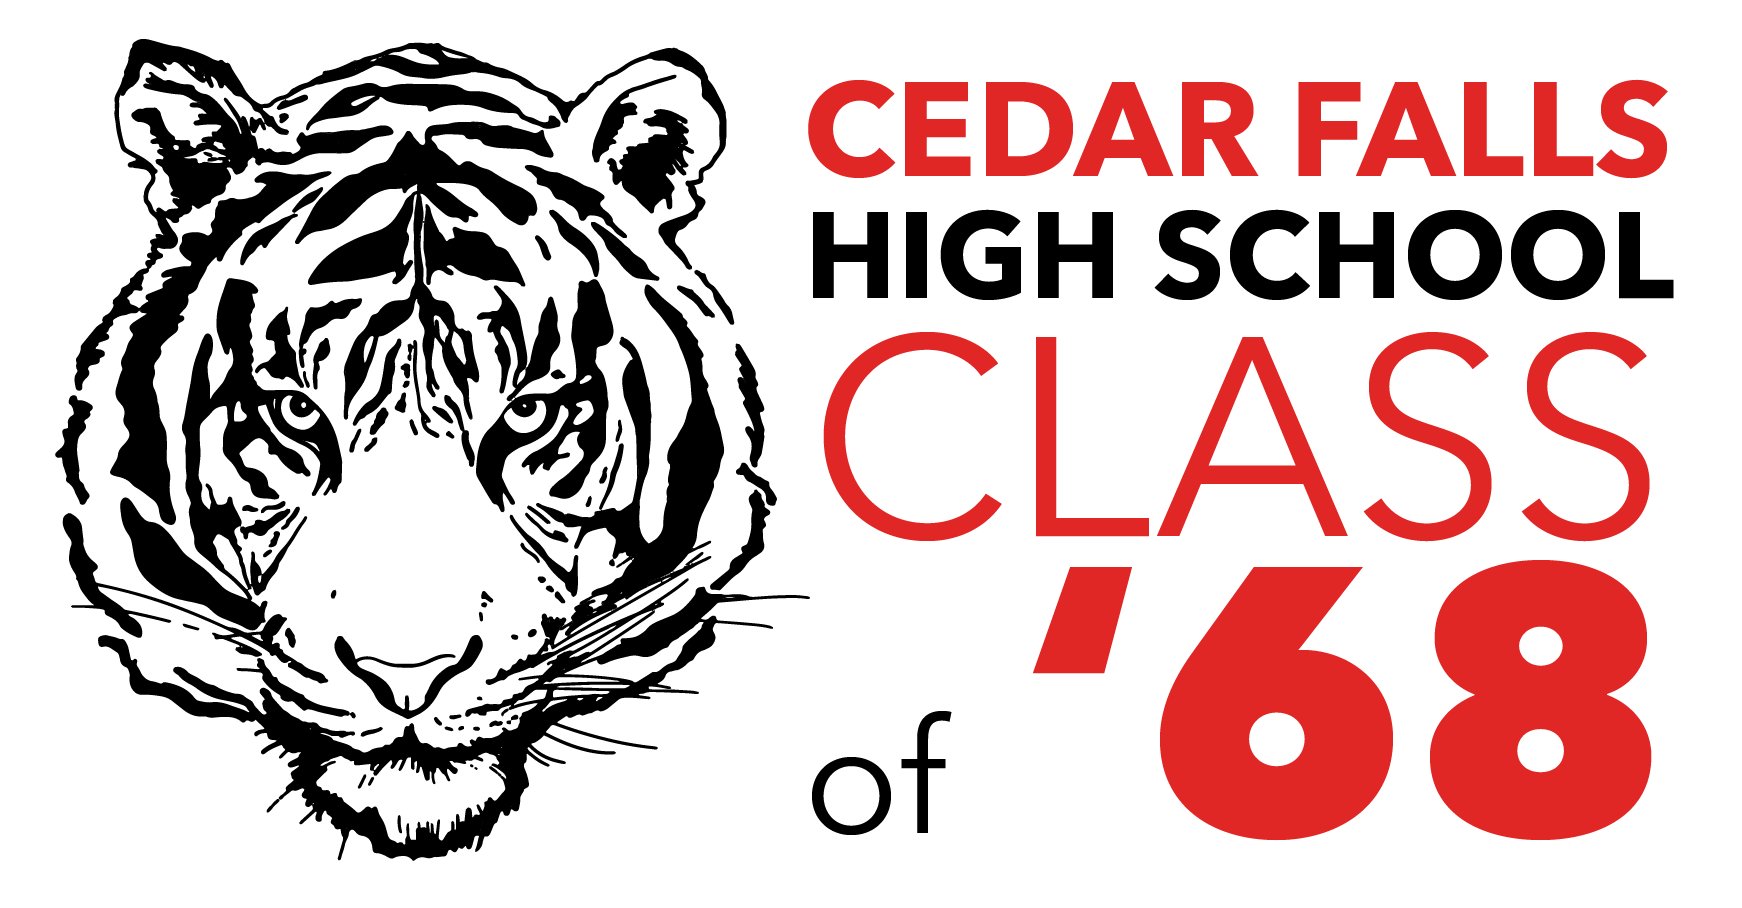 Cedar Falls High School Class of '68